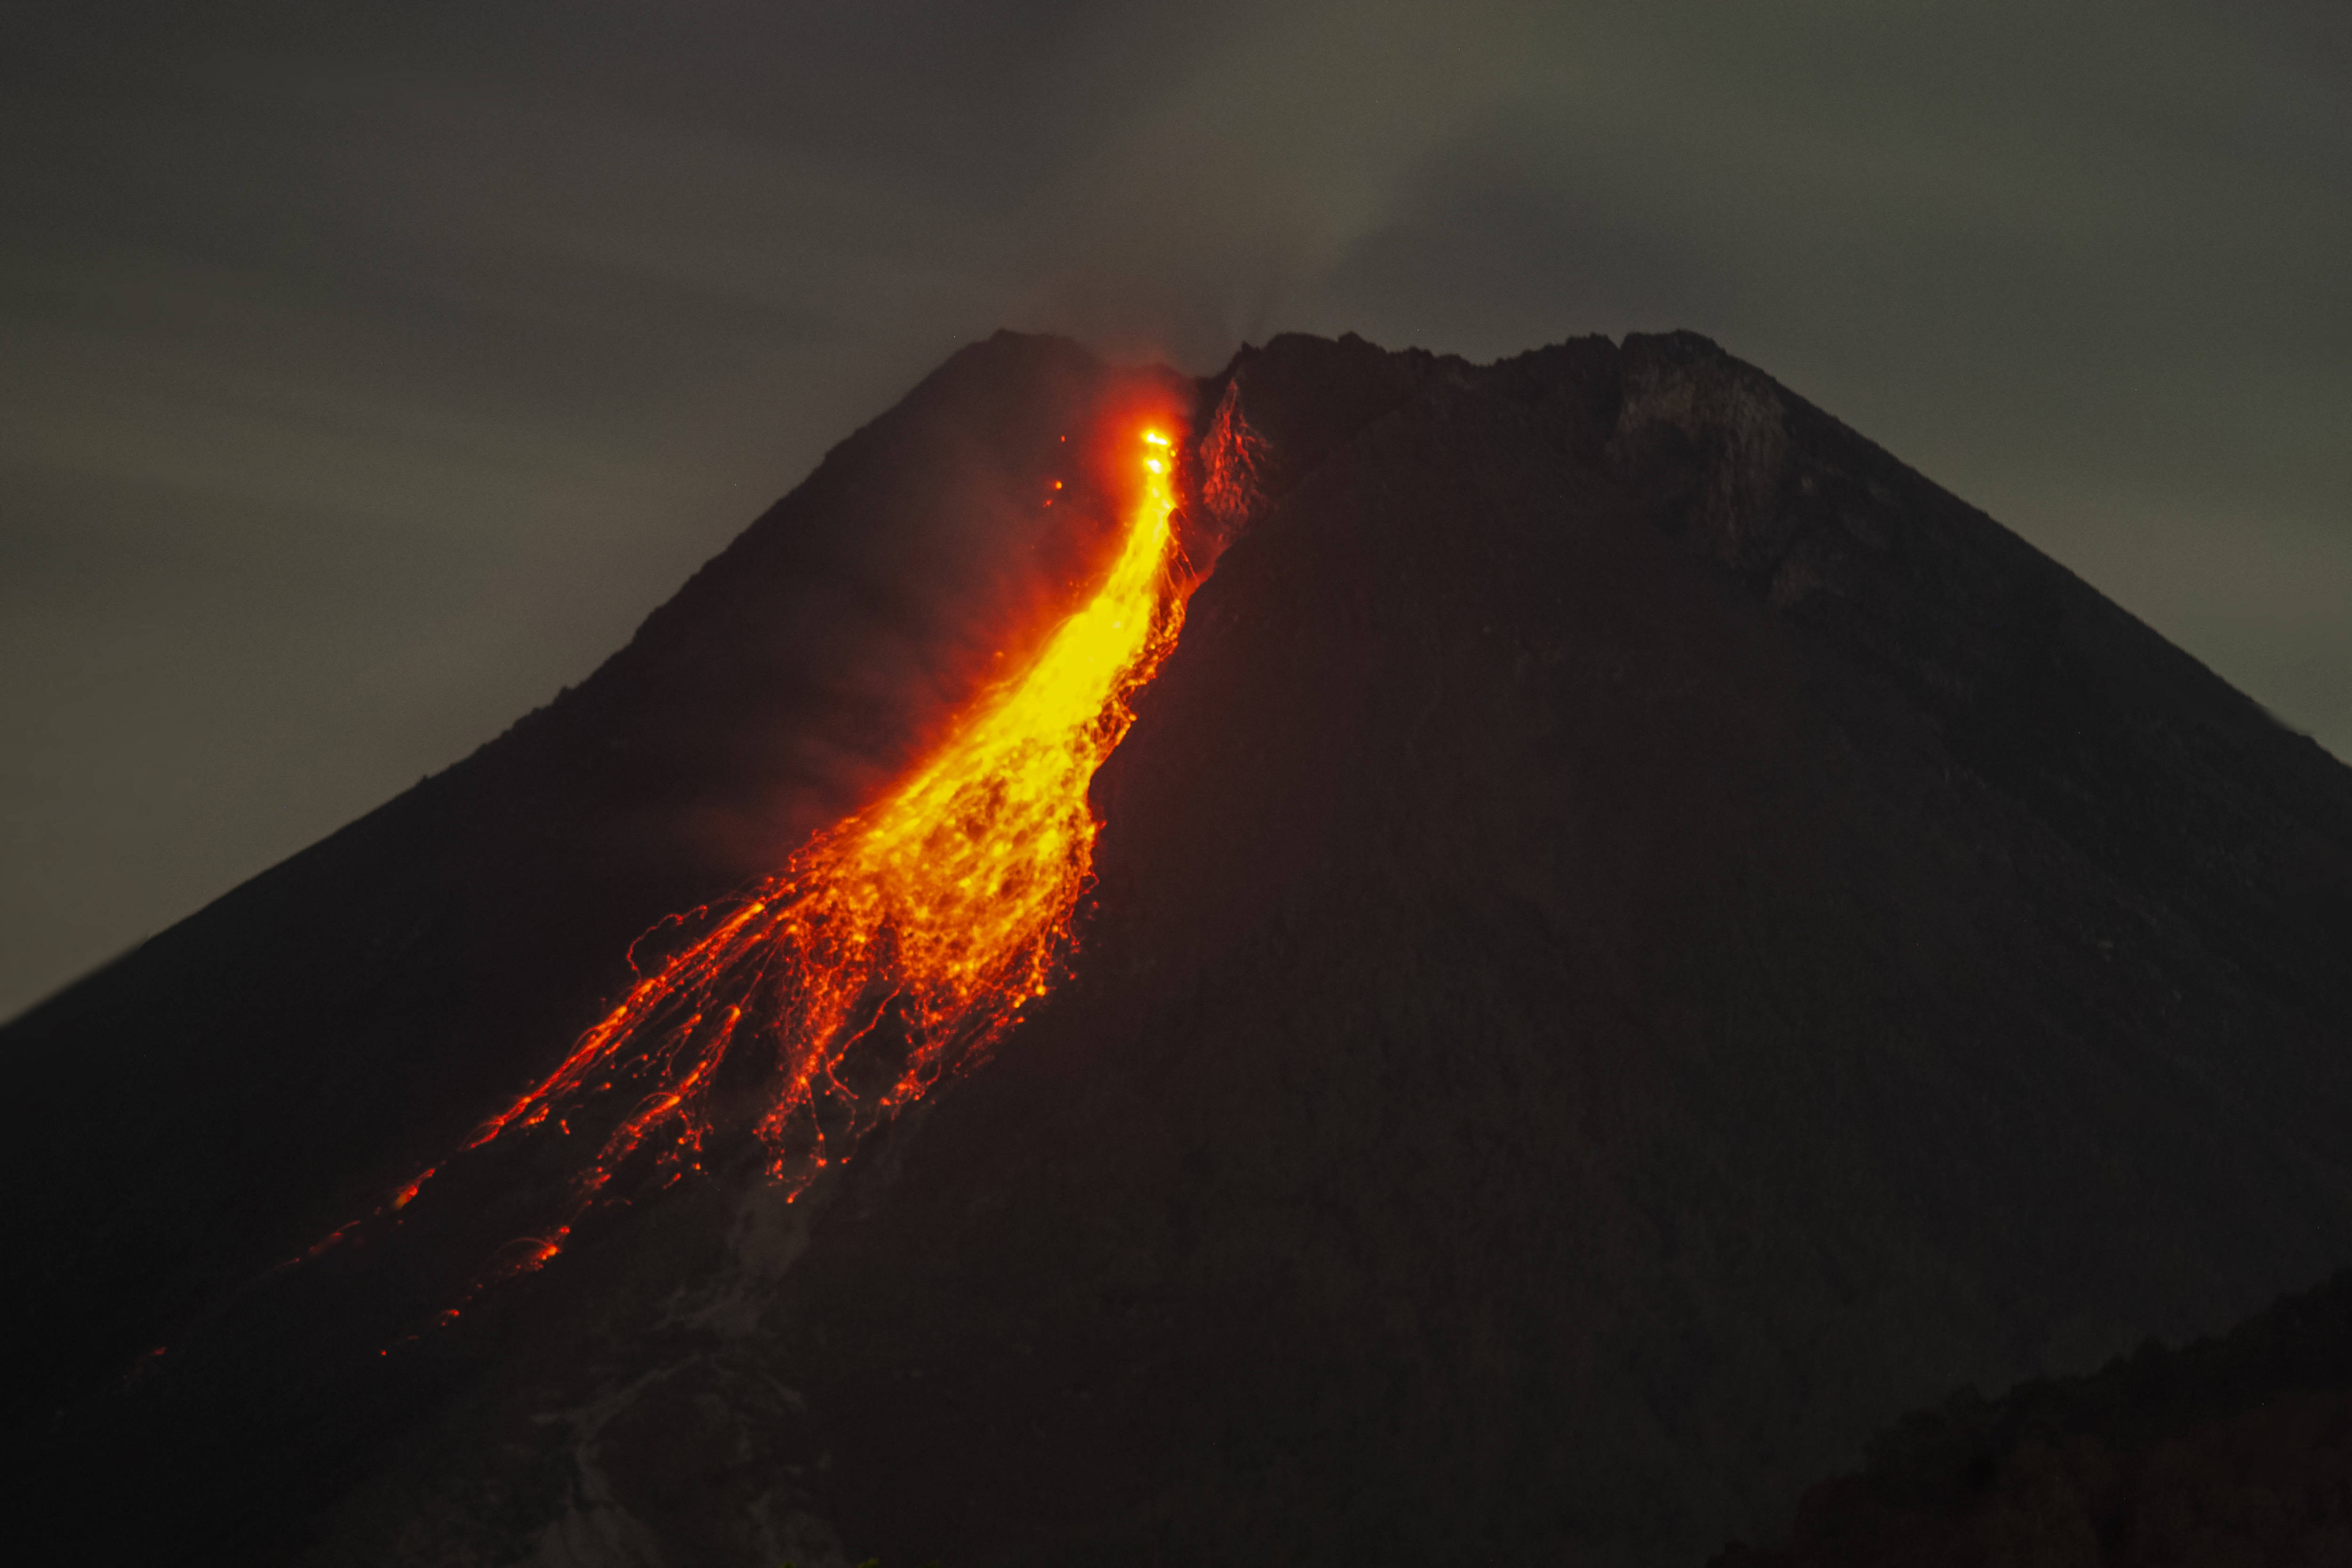 _默拉皮火山位于哪里_默拉皮火山2019年喷发